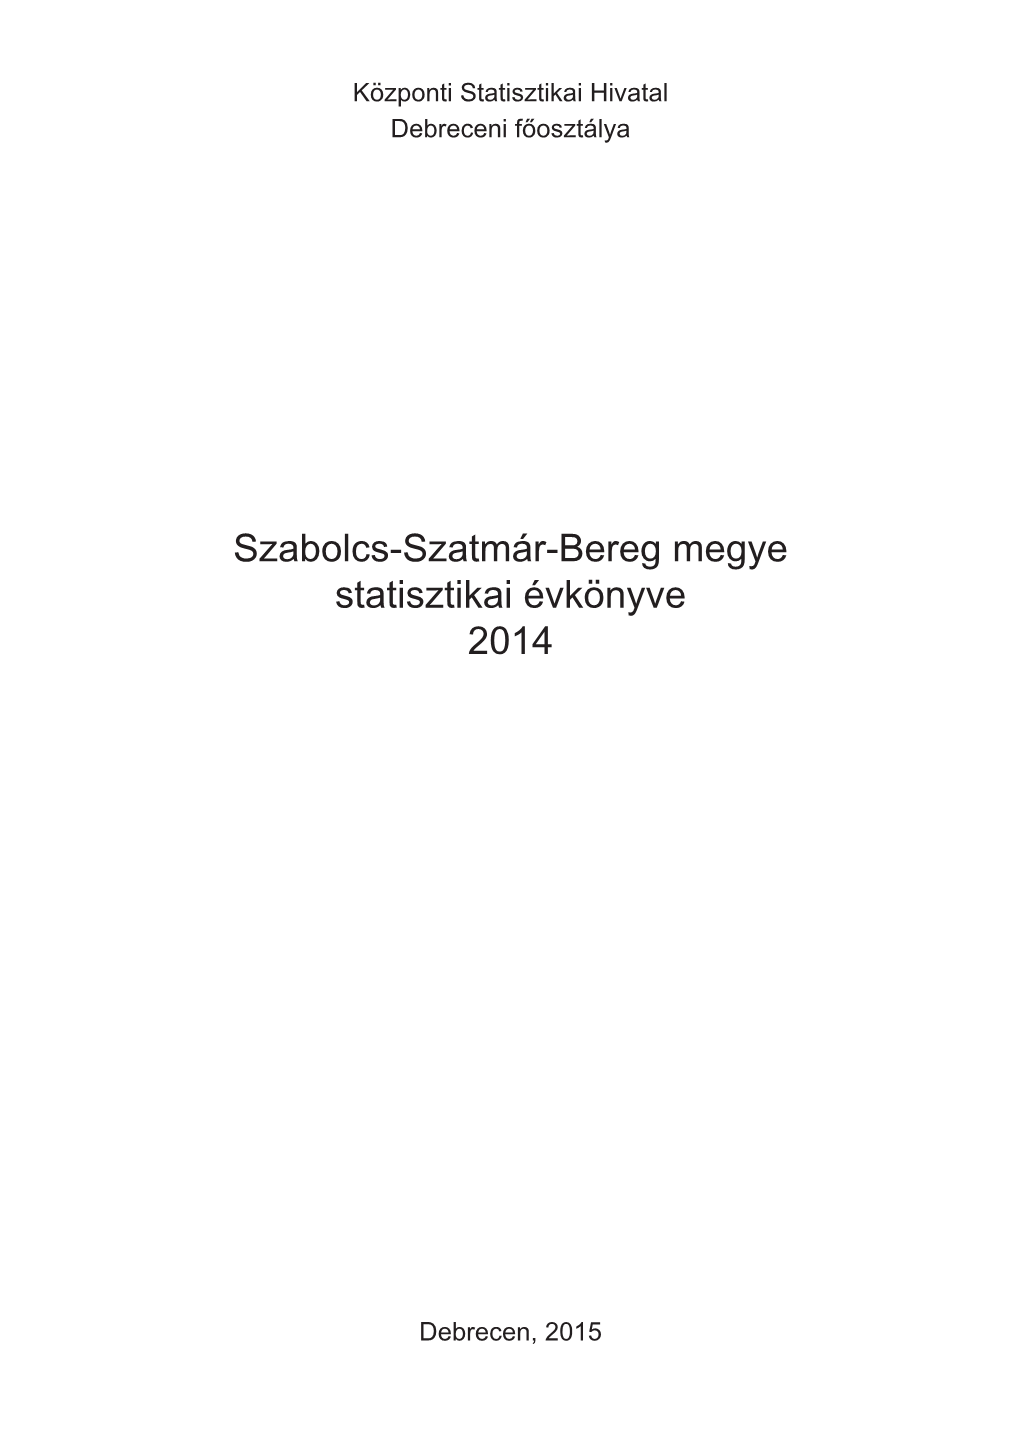 Szabolcs-Szatmár-Bereg Megye Statisztikai Évkönyve, 2014